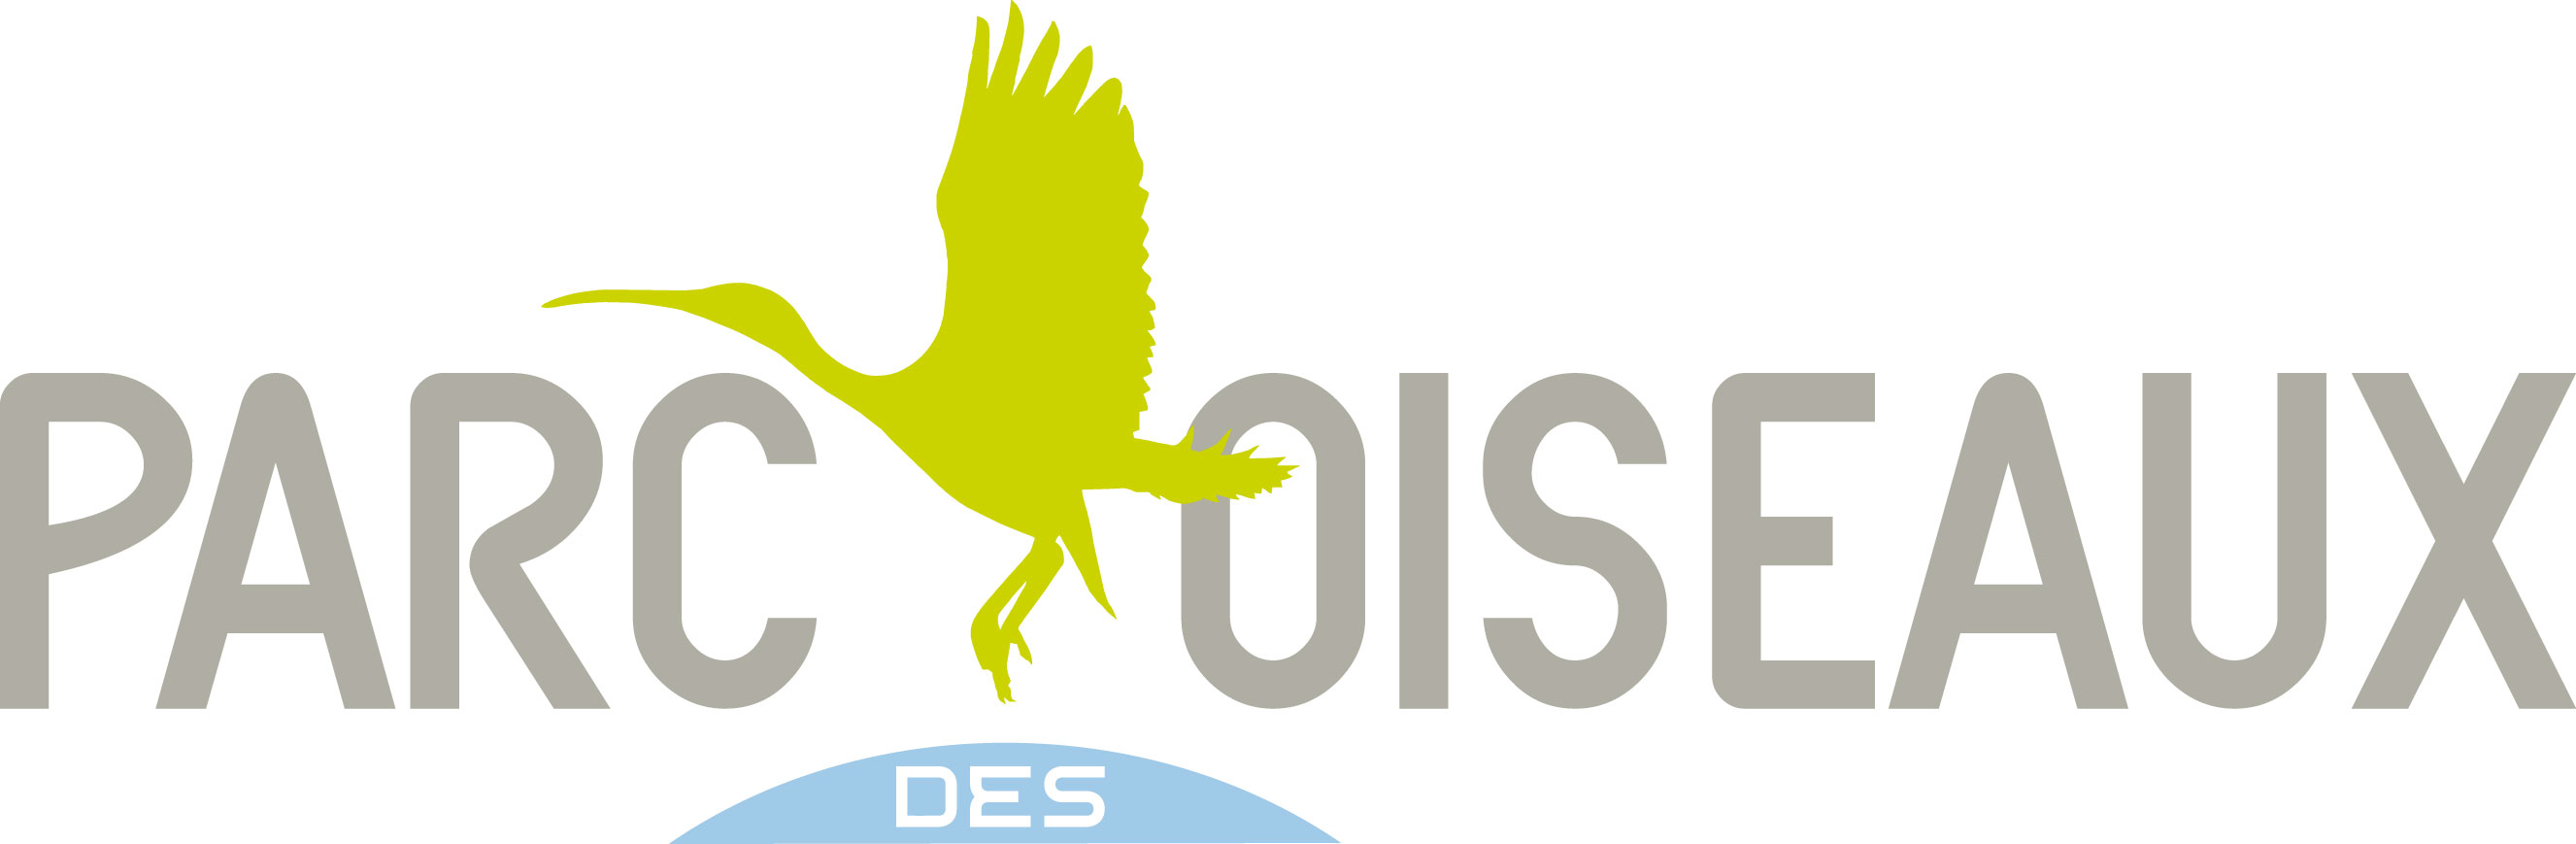 logo Parc oiseaux